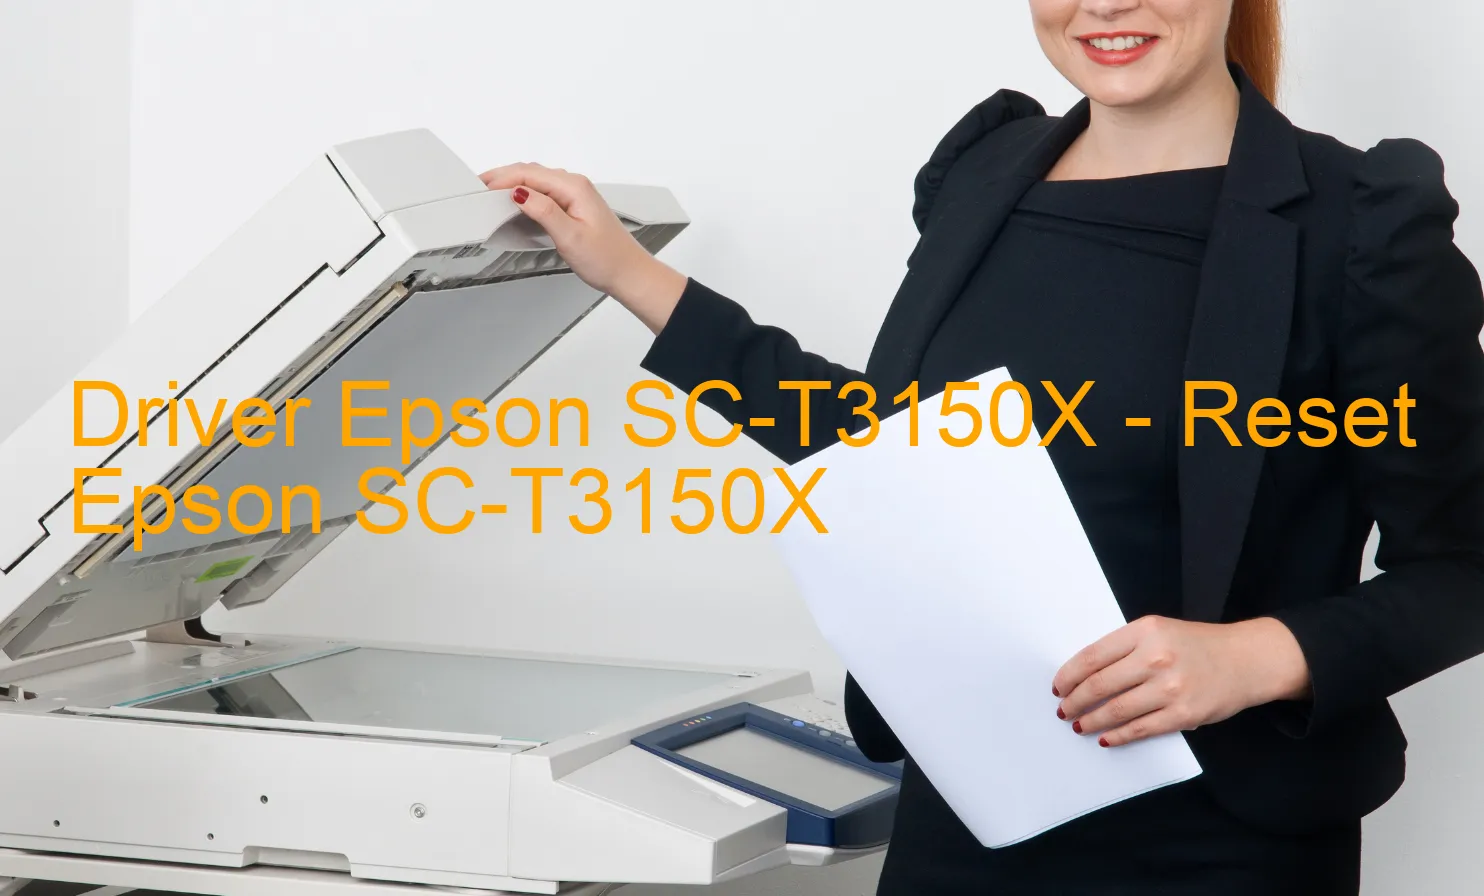 Epson SC-T3150Xのドライバー、Epson SC-T3150Xのリセットソフトウェア